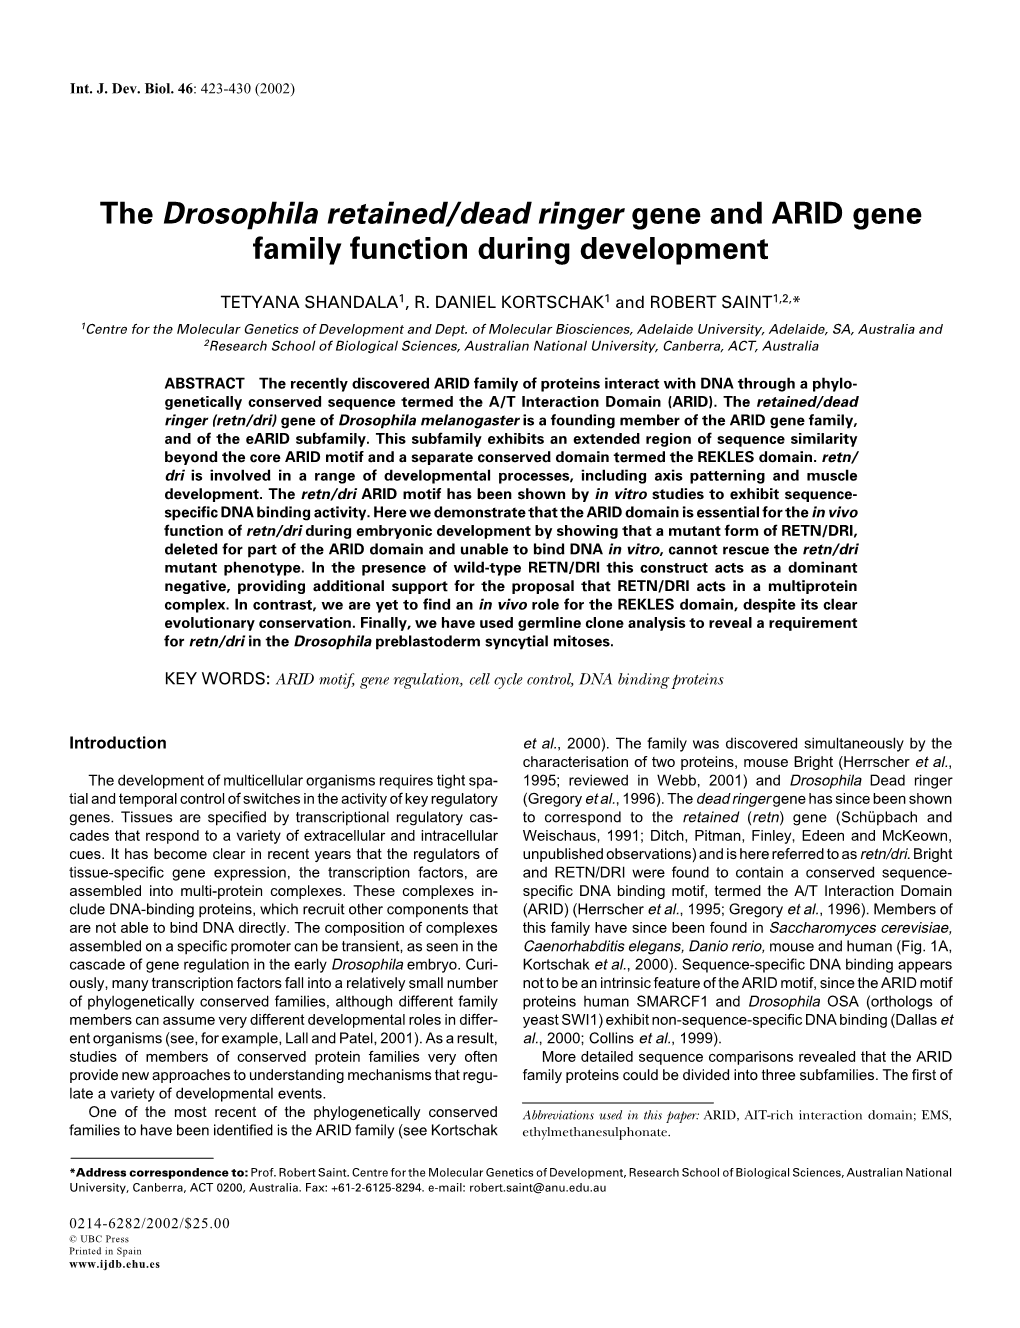 The Drosophila Retained/Dead Ringer Gene and ARID Gene Family Function During Development